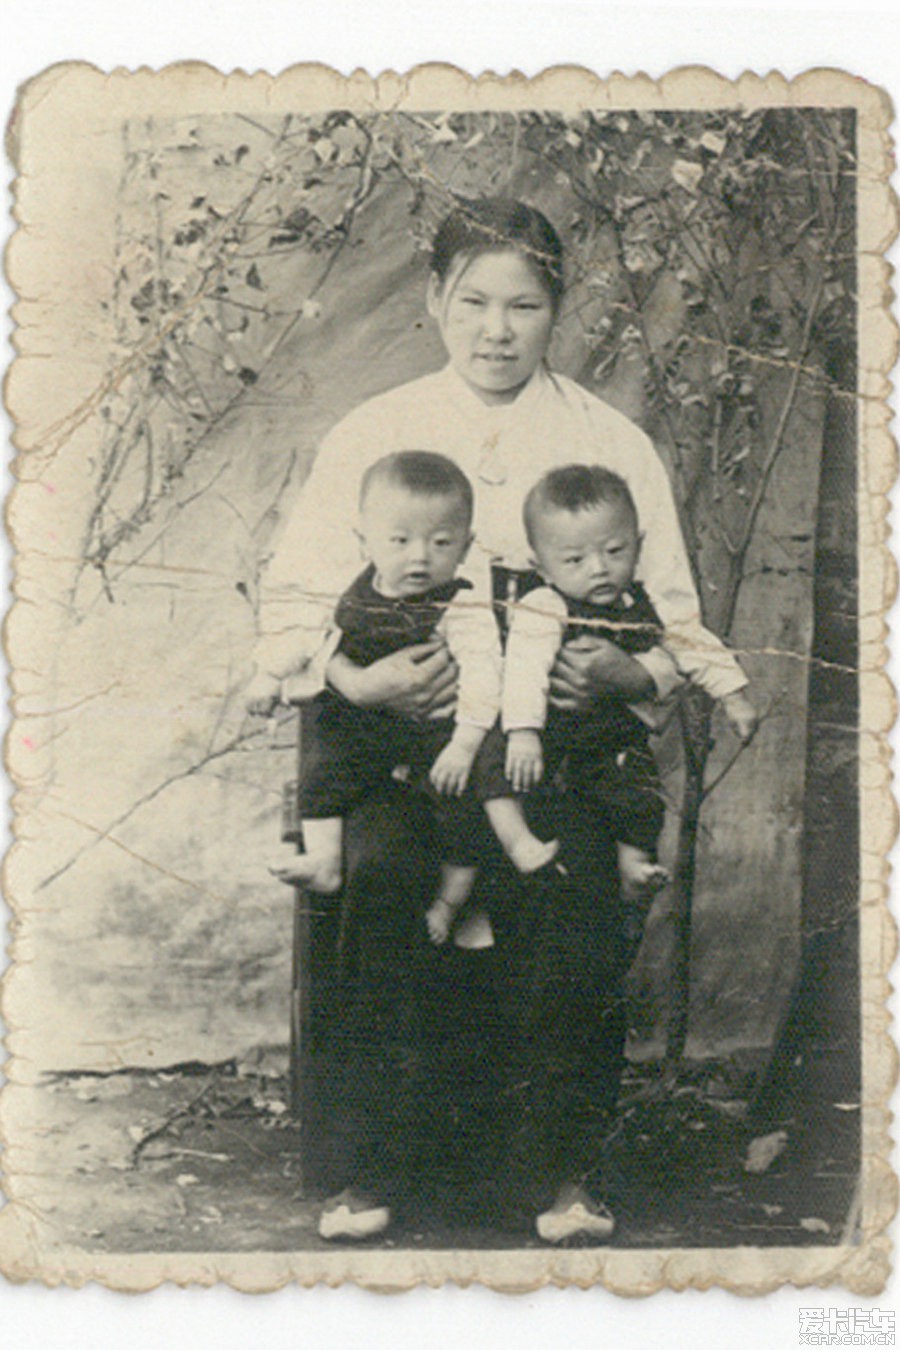 在中国侨居了几乎半个世纪的朝鲜人生活记实片